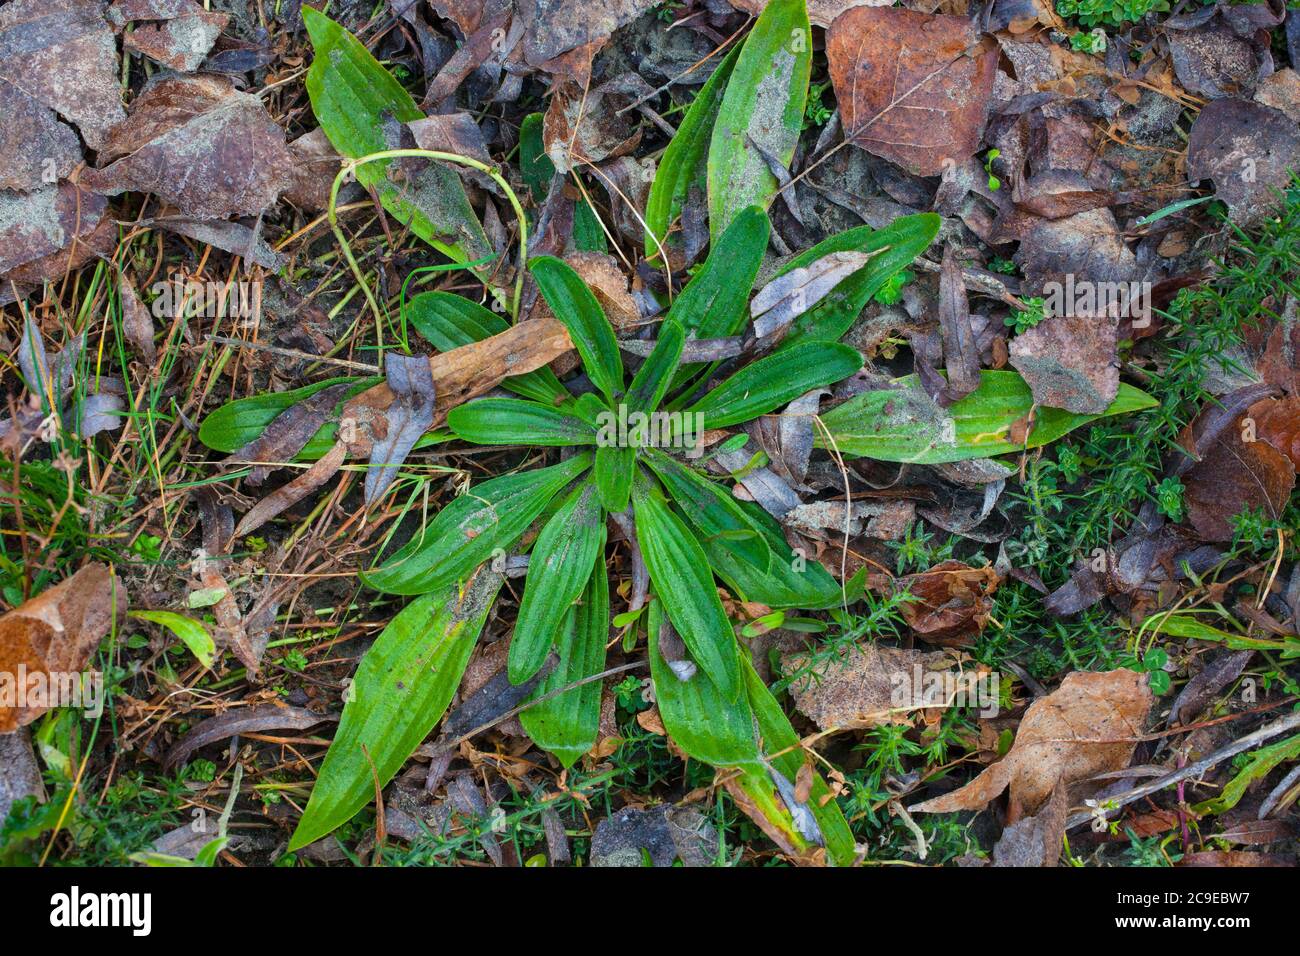 Plantain (Plantago) Edible and Medicinal Wild Herbs Stock Photo